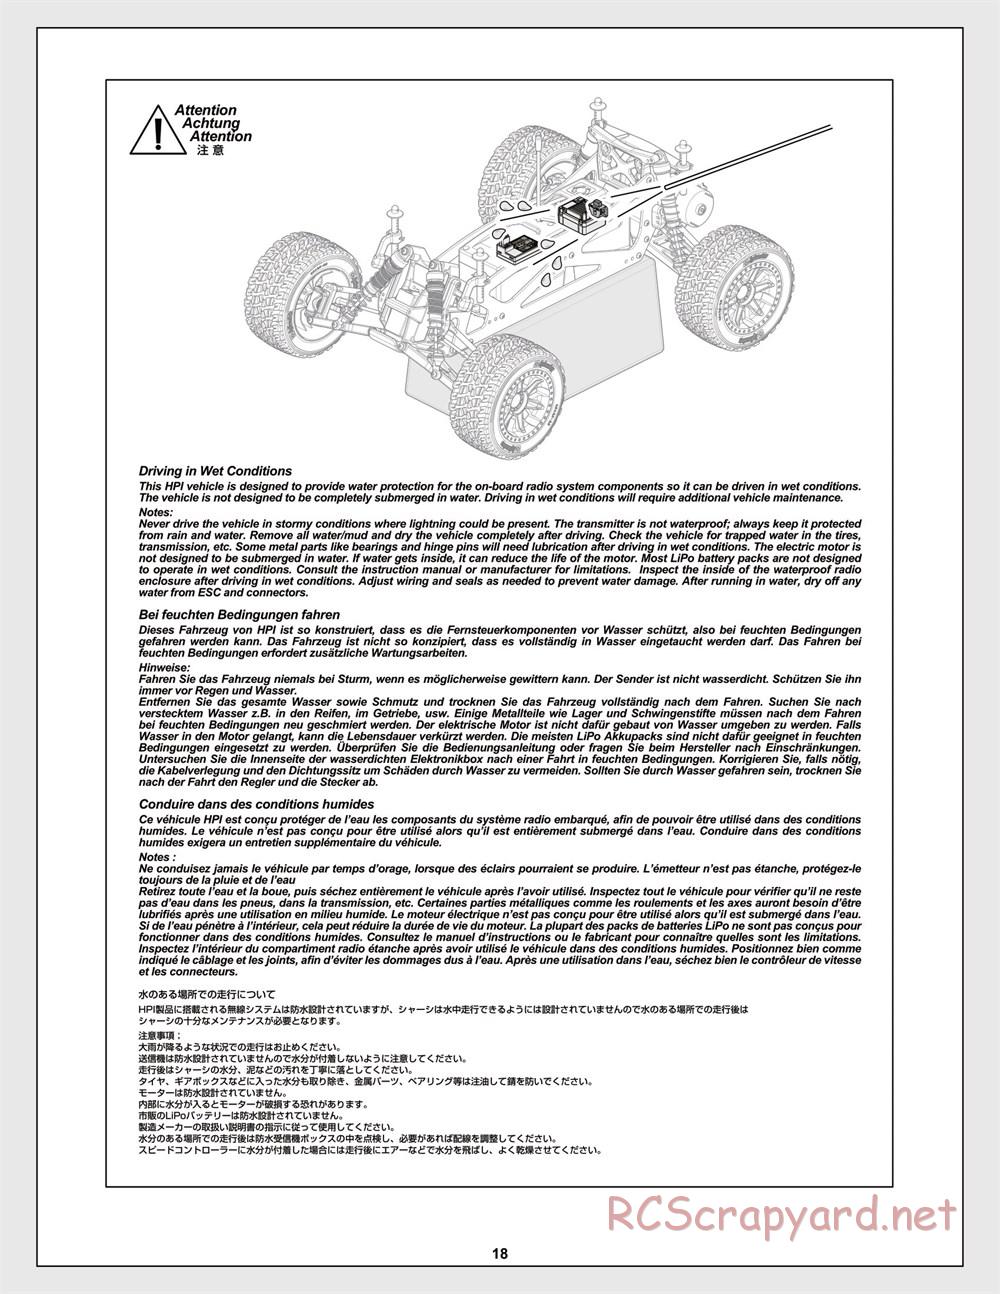 HPI - Jumpshot MT Flux - Manual - Page 18